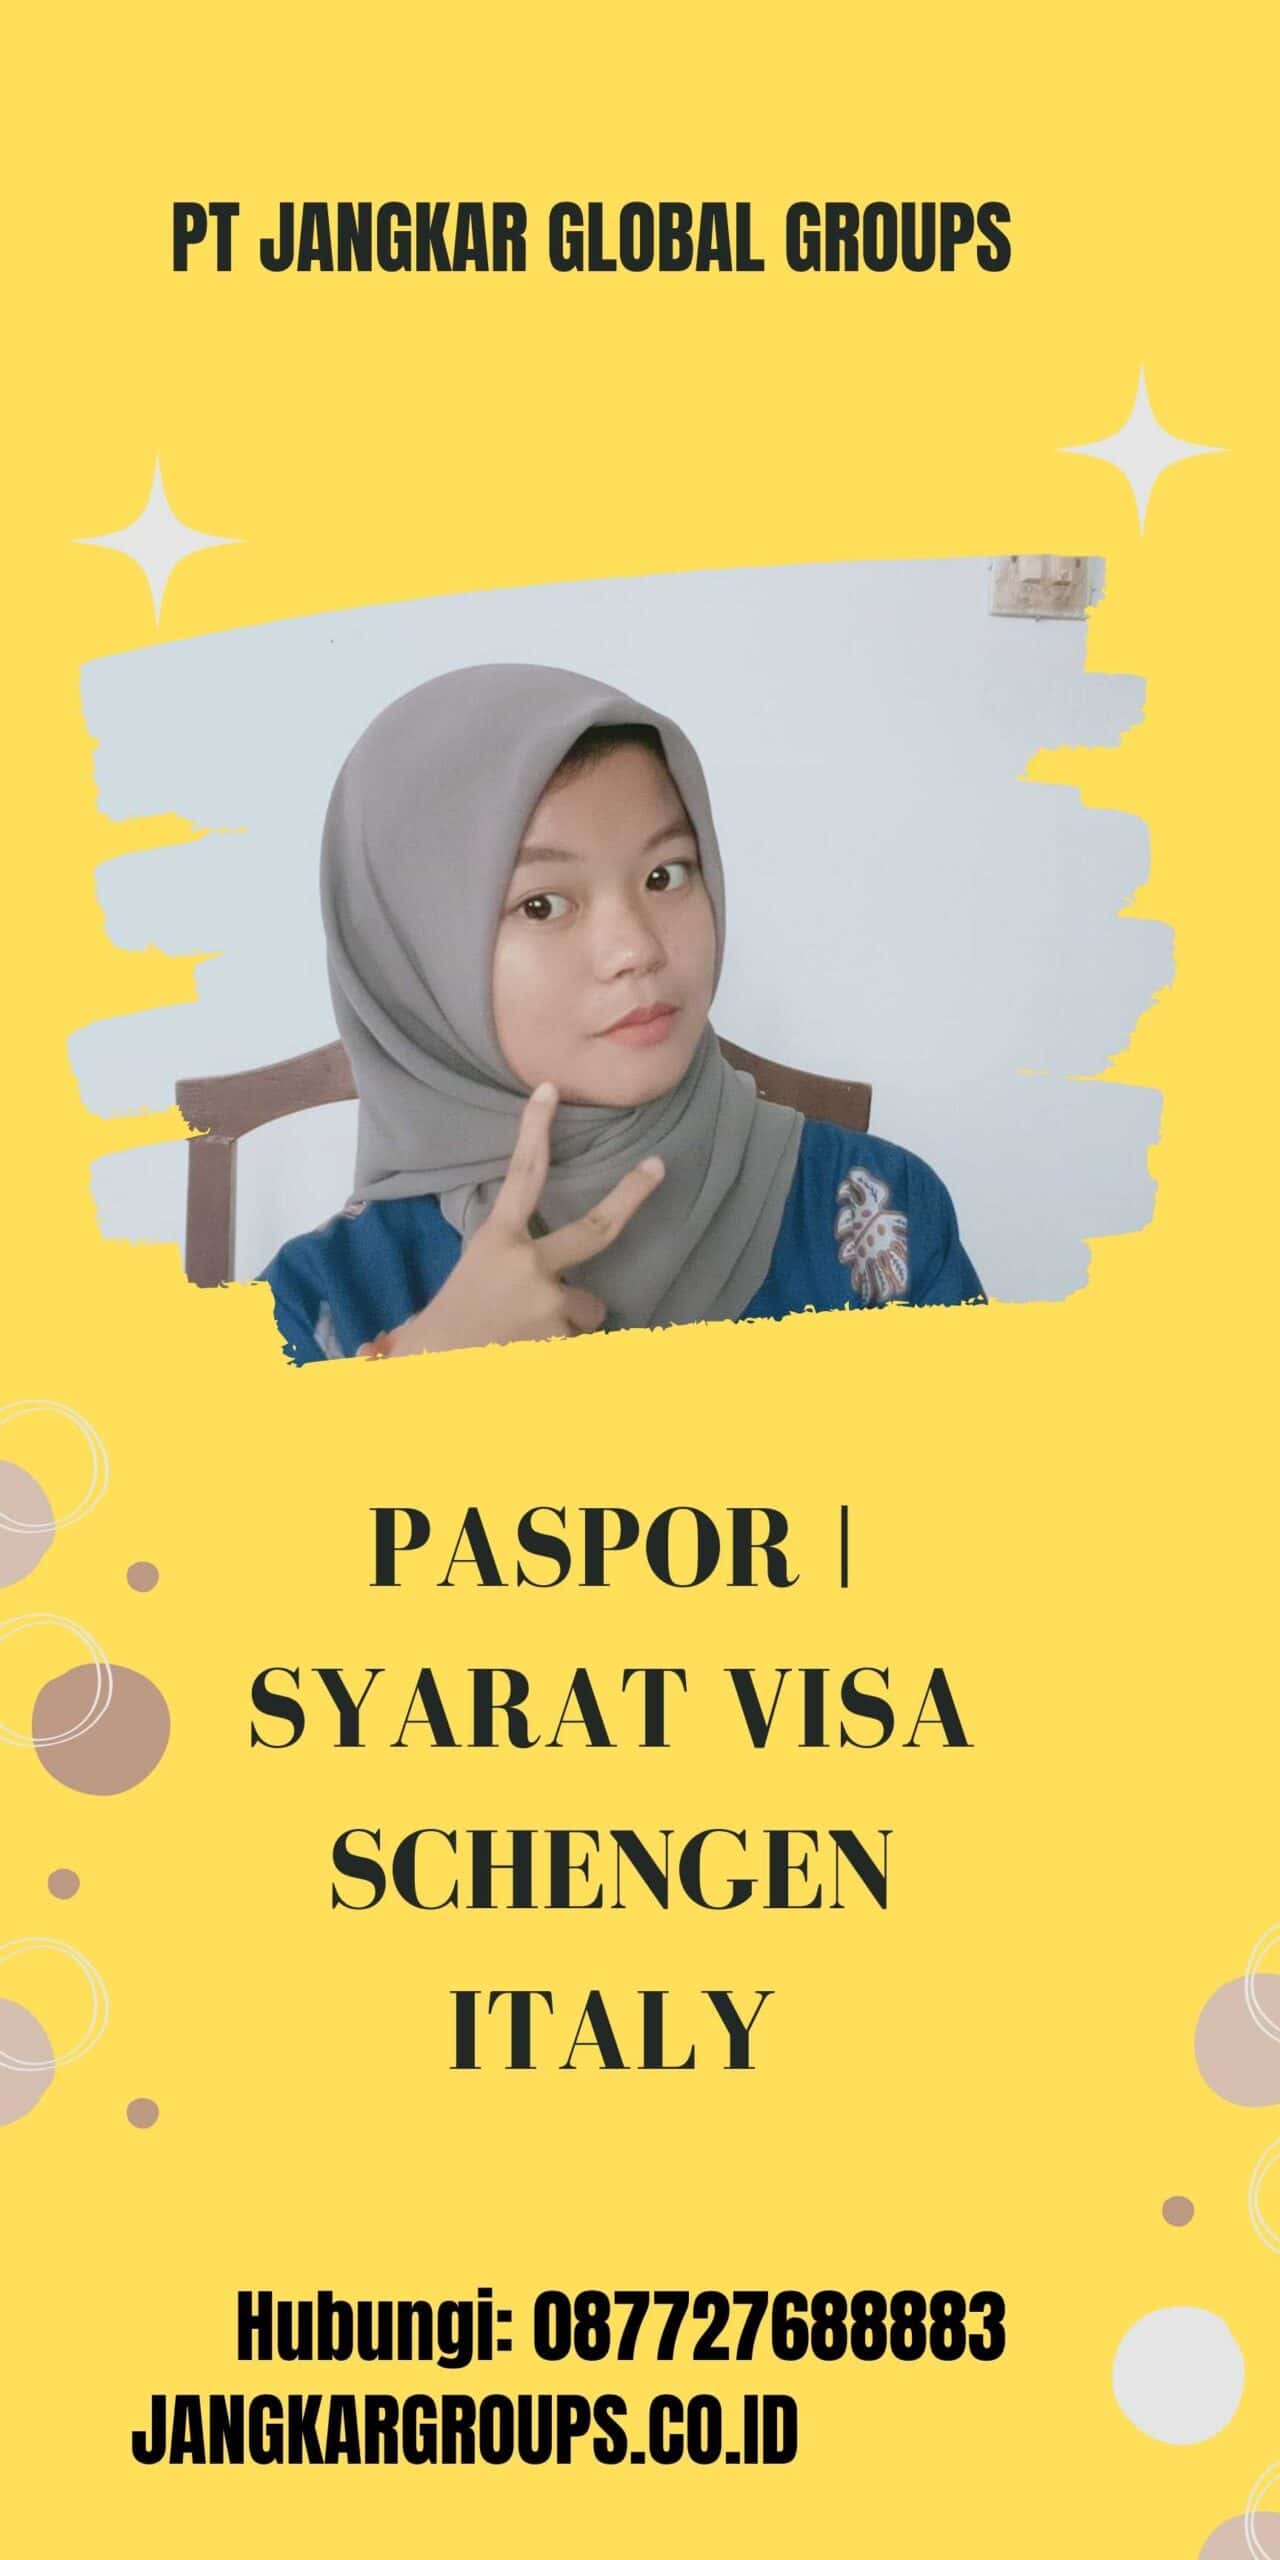 Paspor | Syarat Visa Schengen Italy